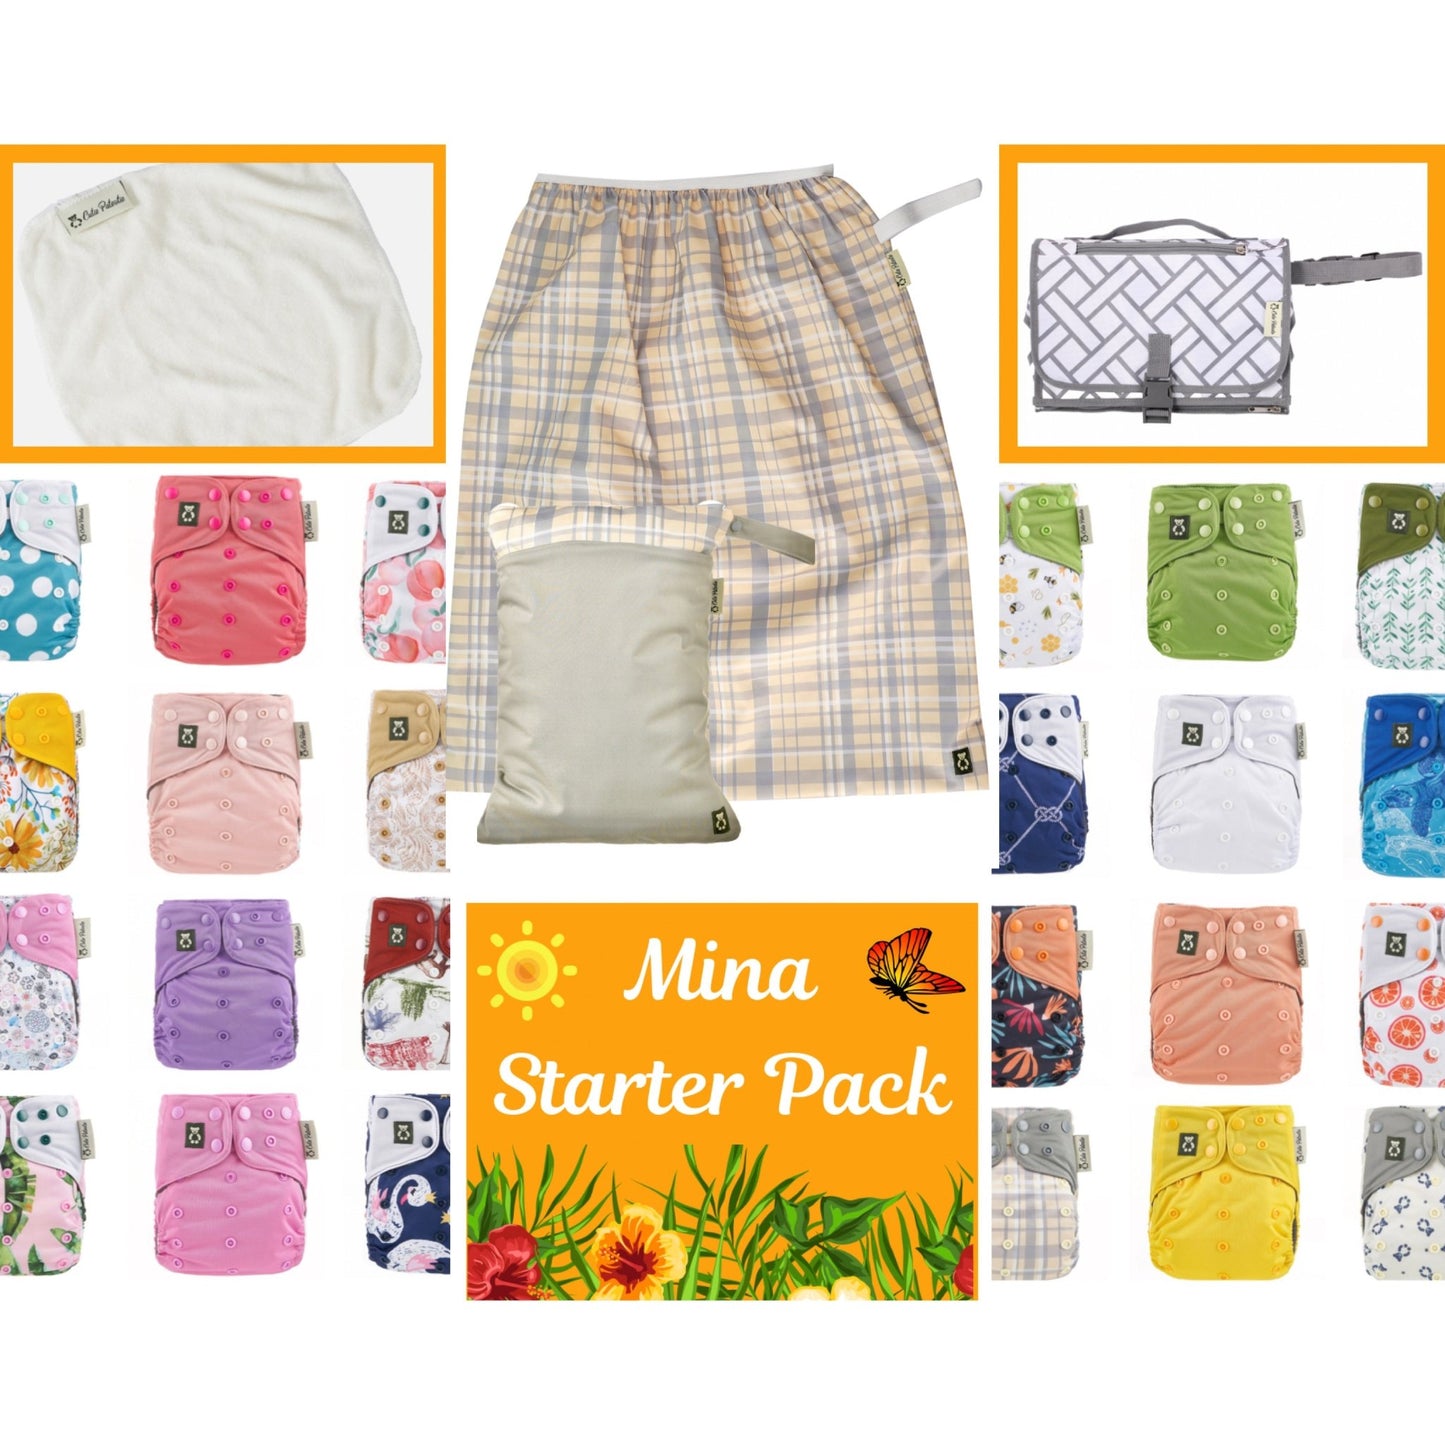 Mina Starter Pack